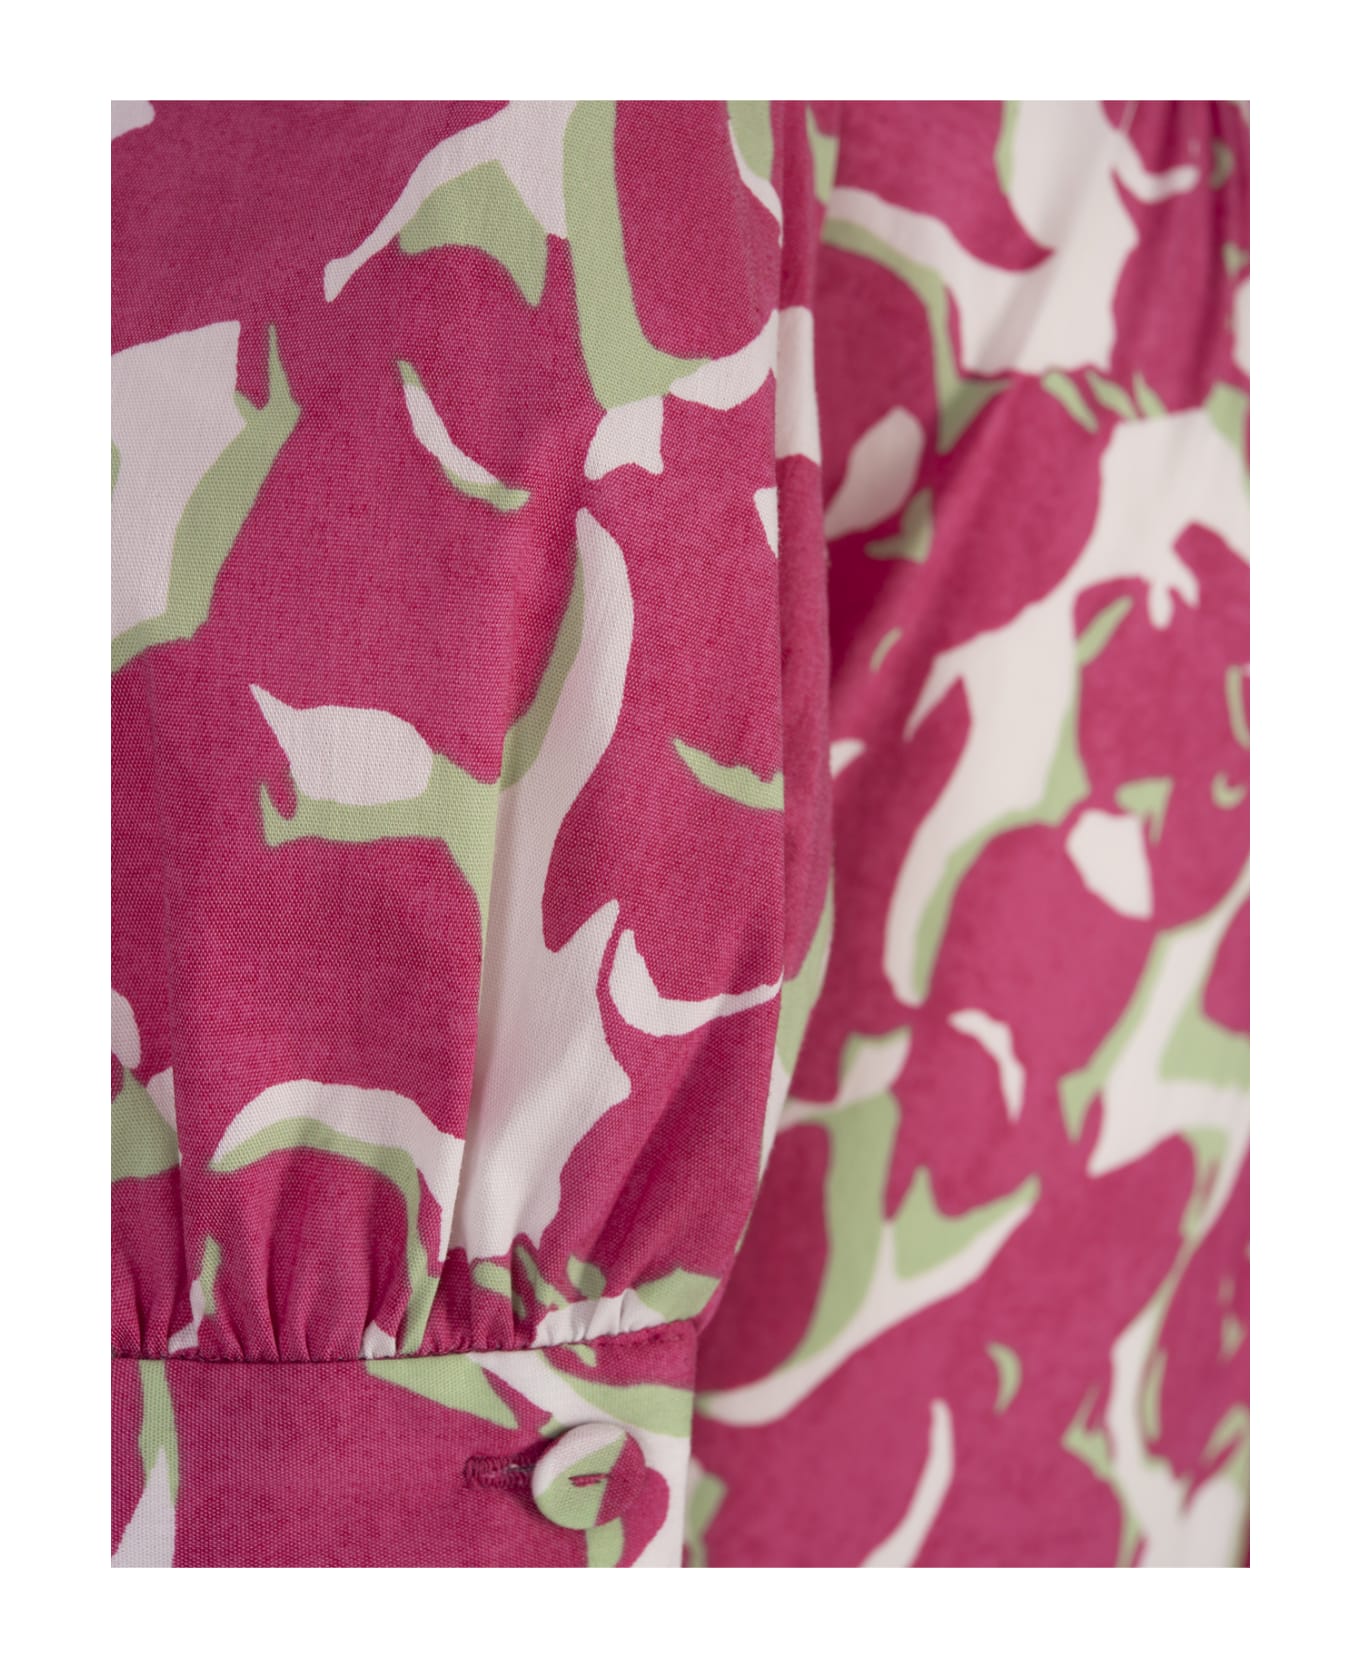 Diane Von Furstenberg Queena Cotton Dress In Flora Nocturna Pink - Pink